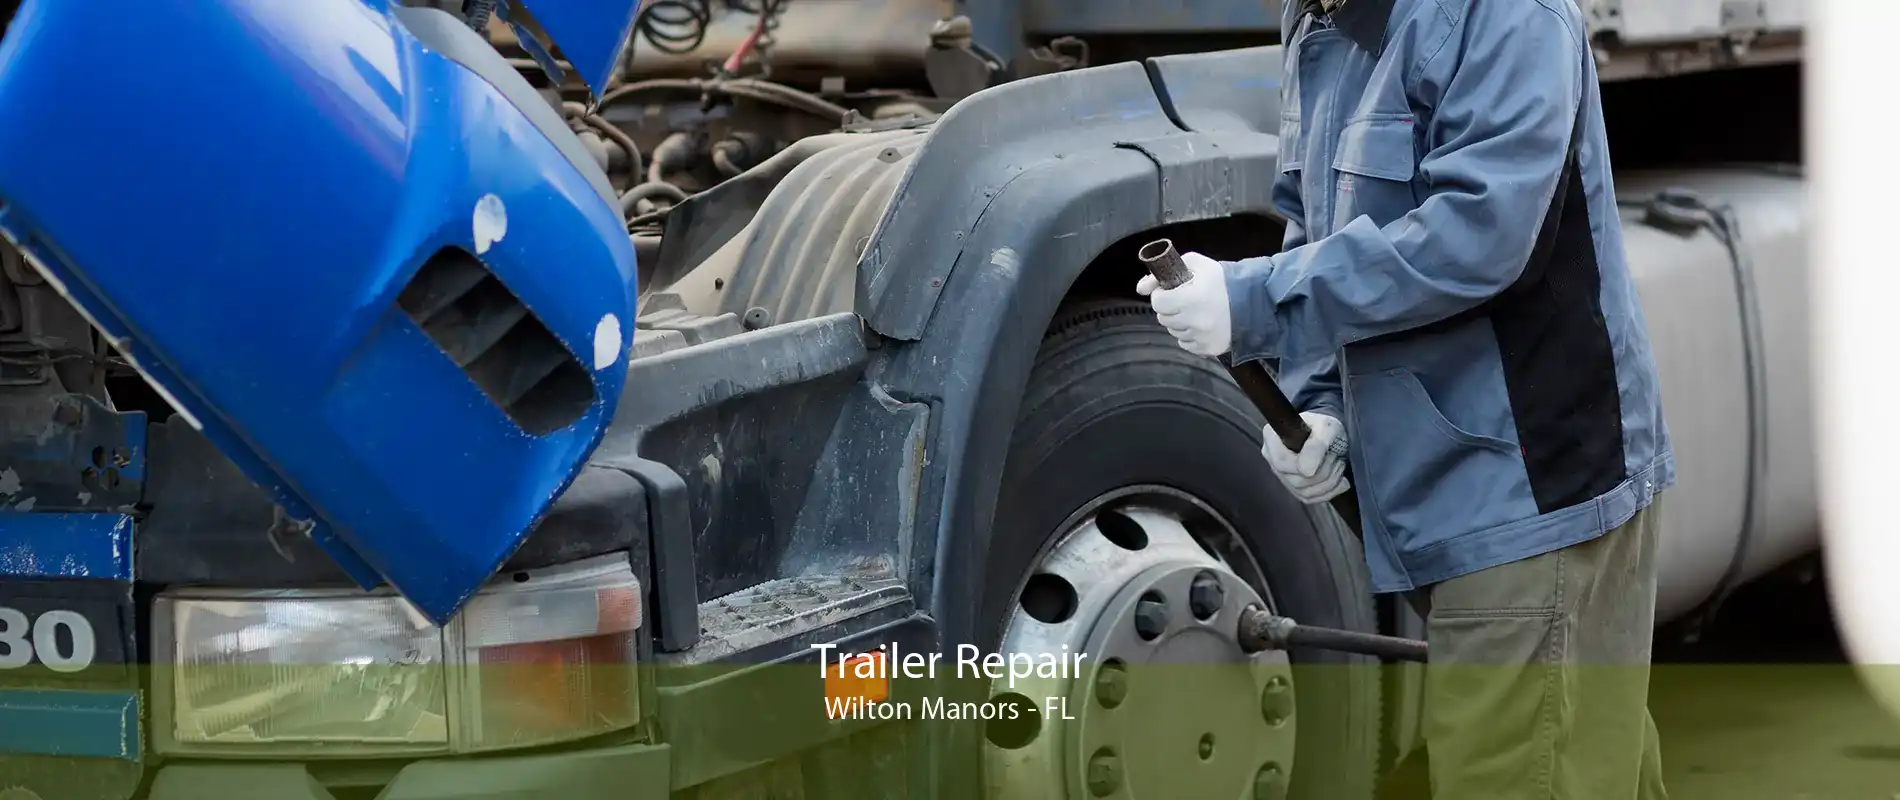 Trailer Repair Wilton Manors - FL